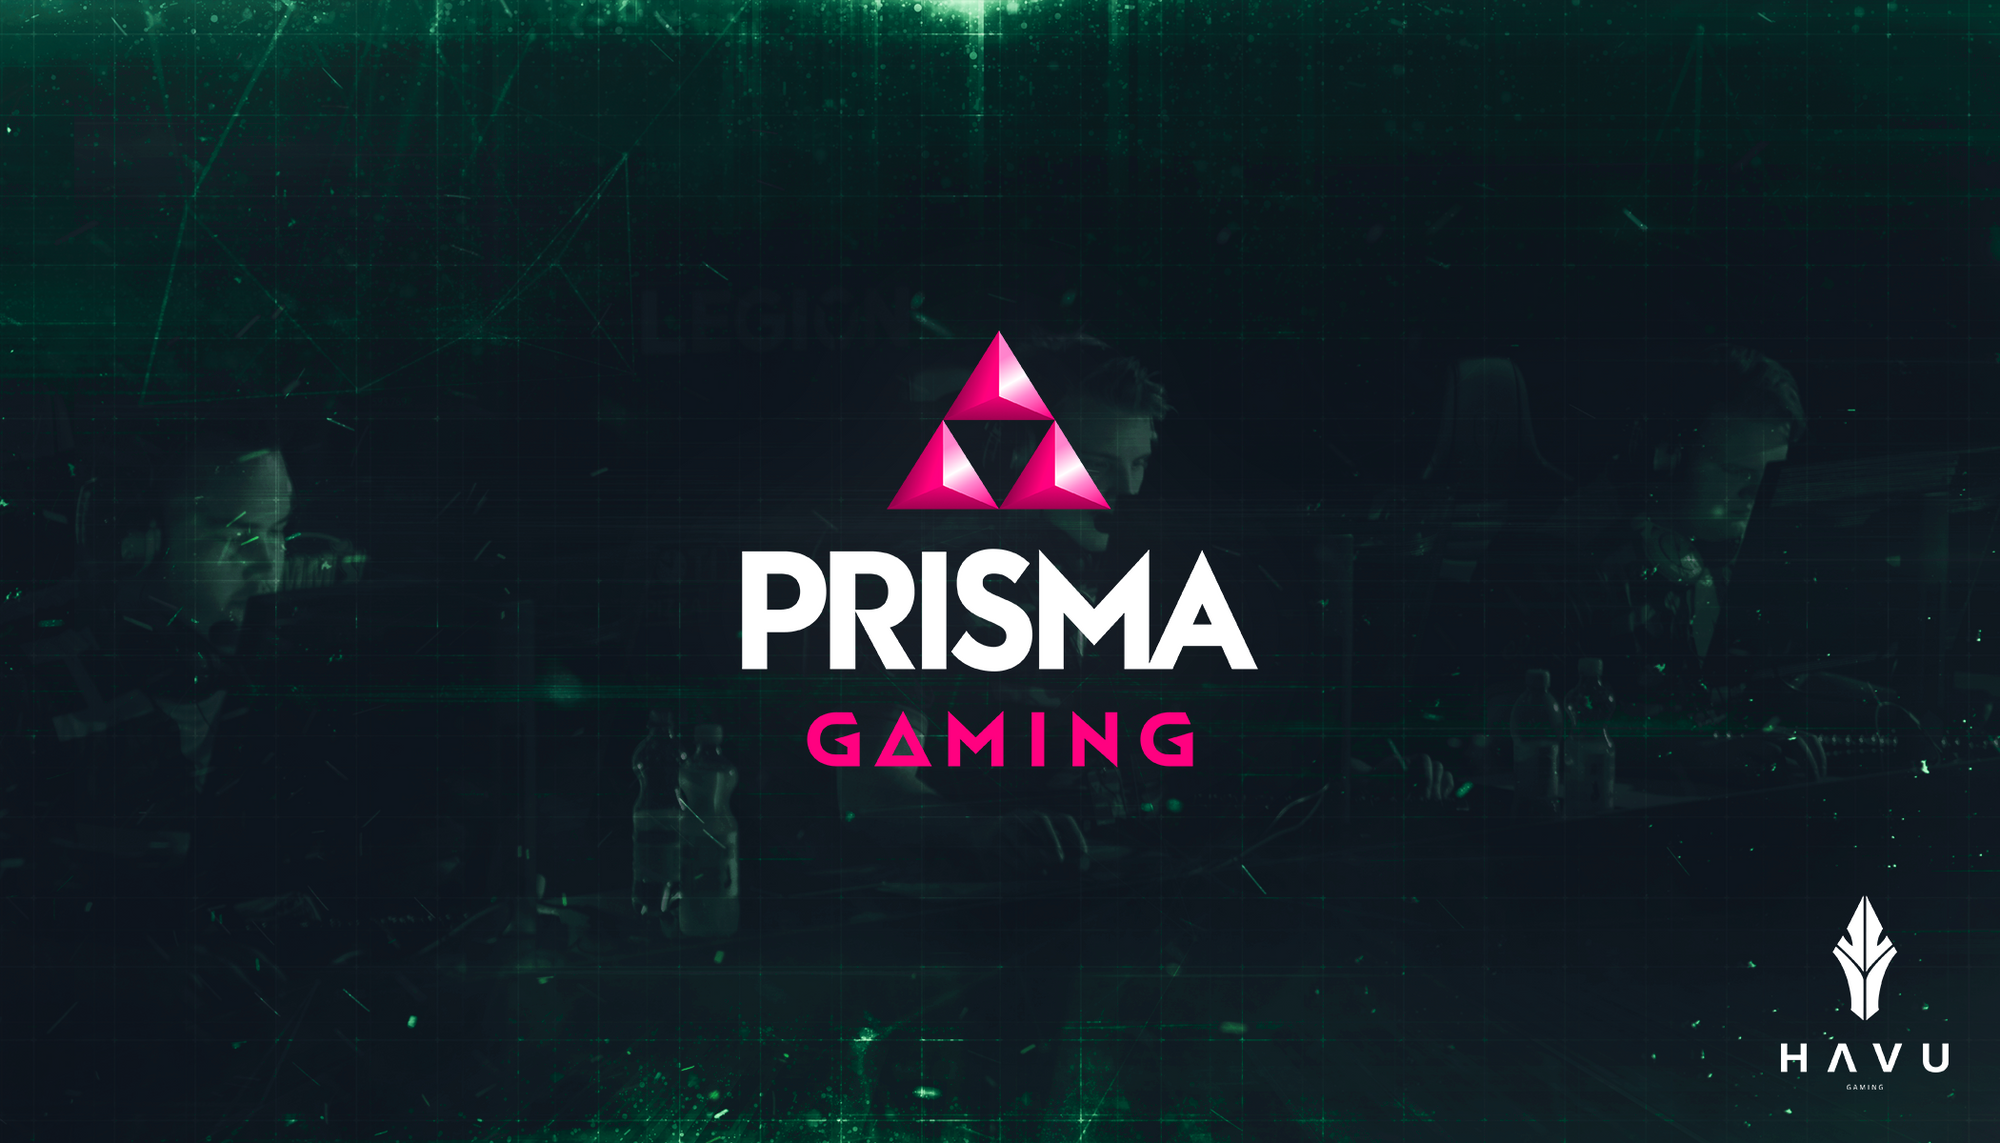 HAVU ja Prisma rakentavat yhteistyössä uutta Prisma Gaming -konseptia